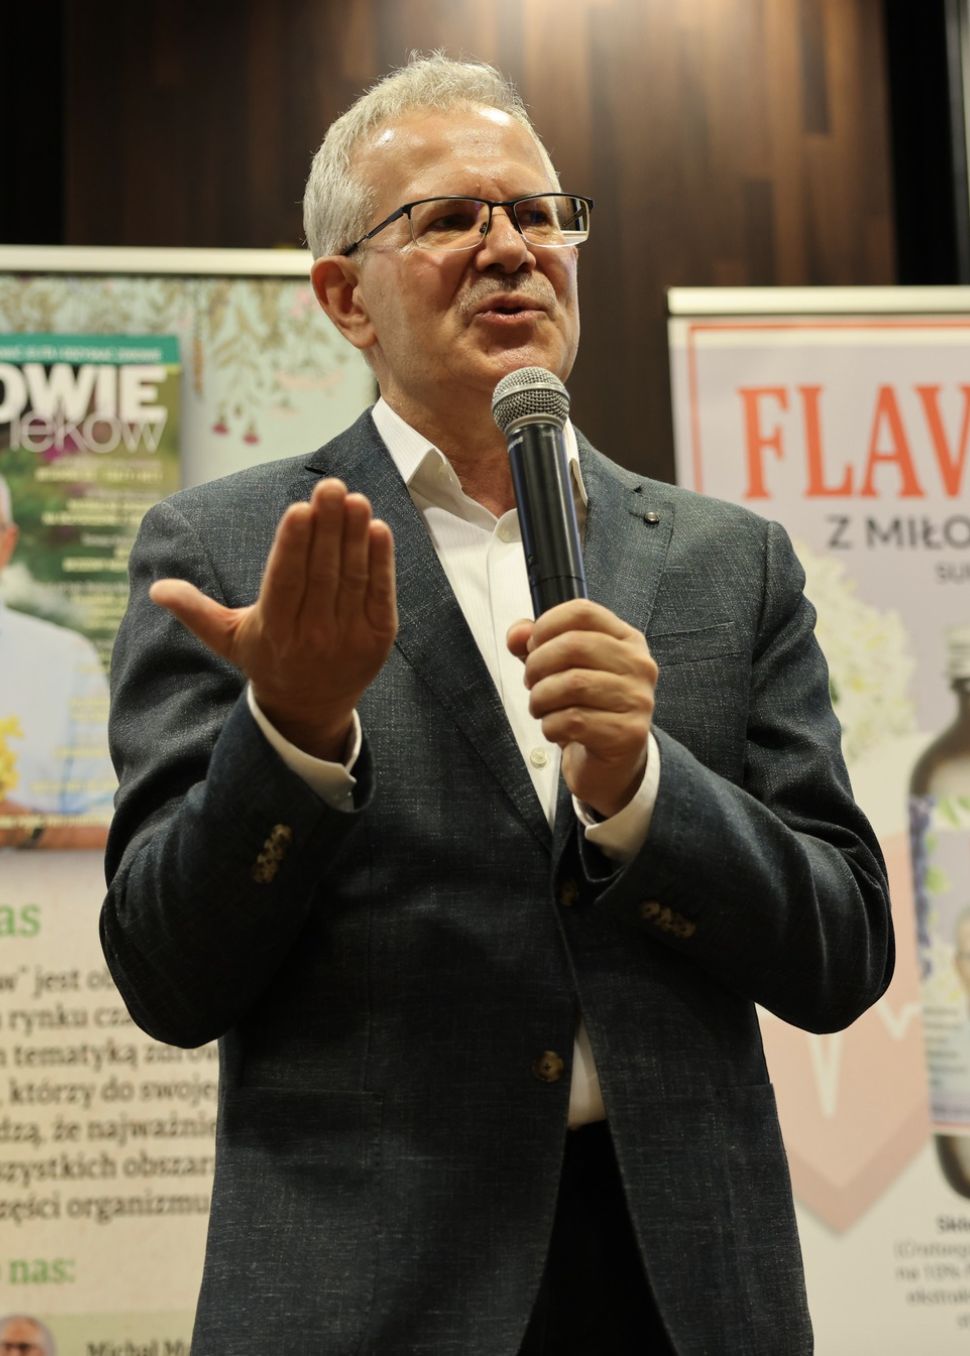 Zbigniew T. Nowak